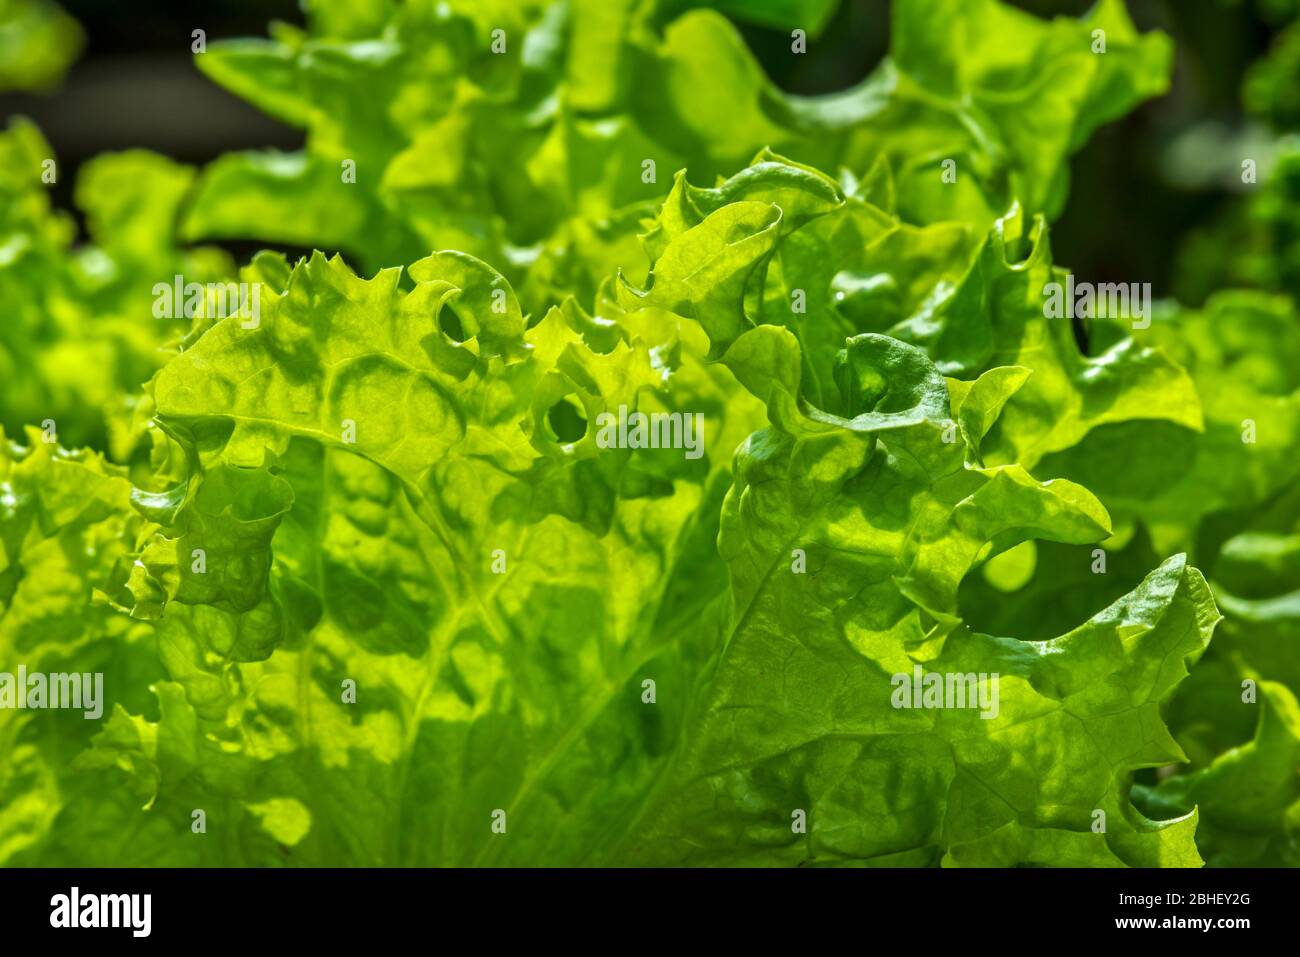 Laitue fraîche (Lactuca sativa), gros plan de feuilles vertes Banque D'Images